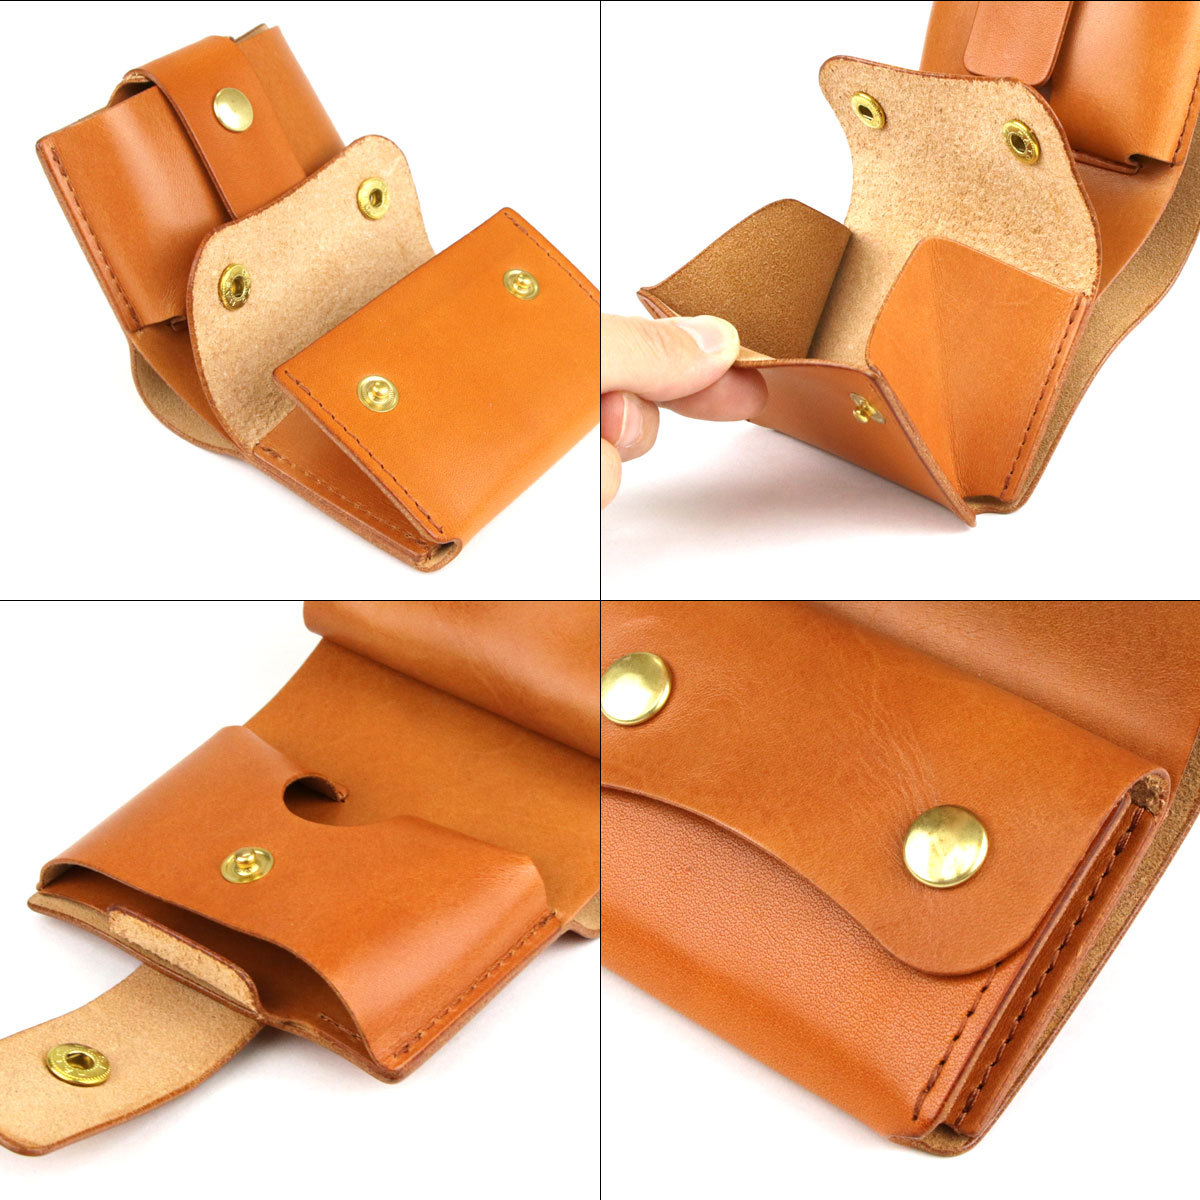 ミニ財布 レディース 二つ折り日本製 ヌメ革 eureka leathercraft 